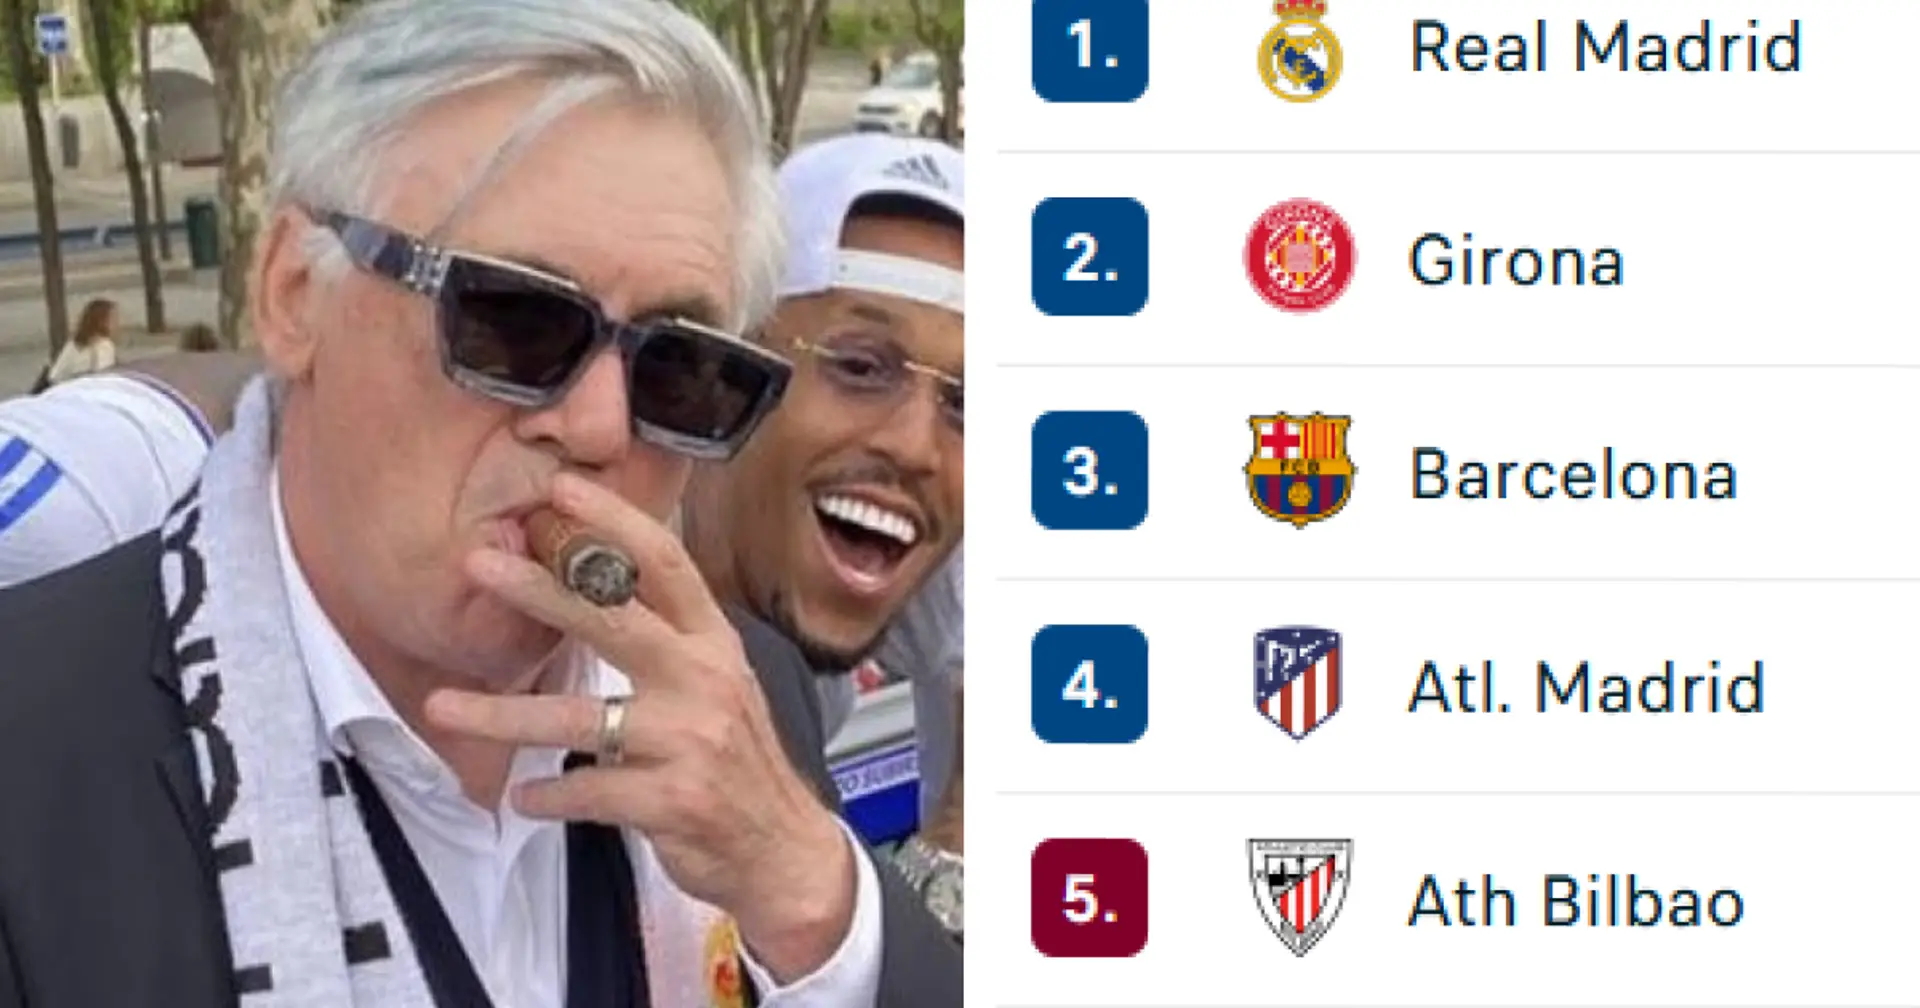 TOUS les rivaux du Real Madrid perdent des points lors de la 24e journée : classement actualisé de la Liga